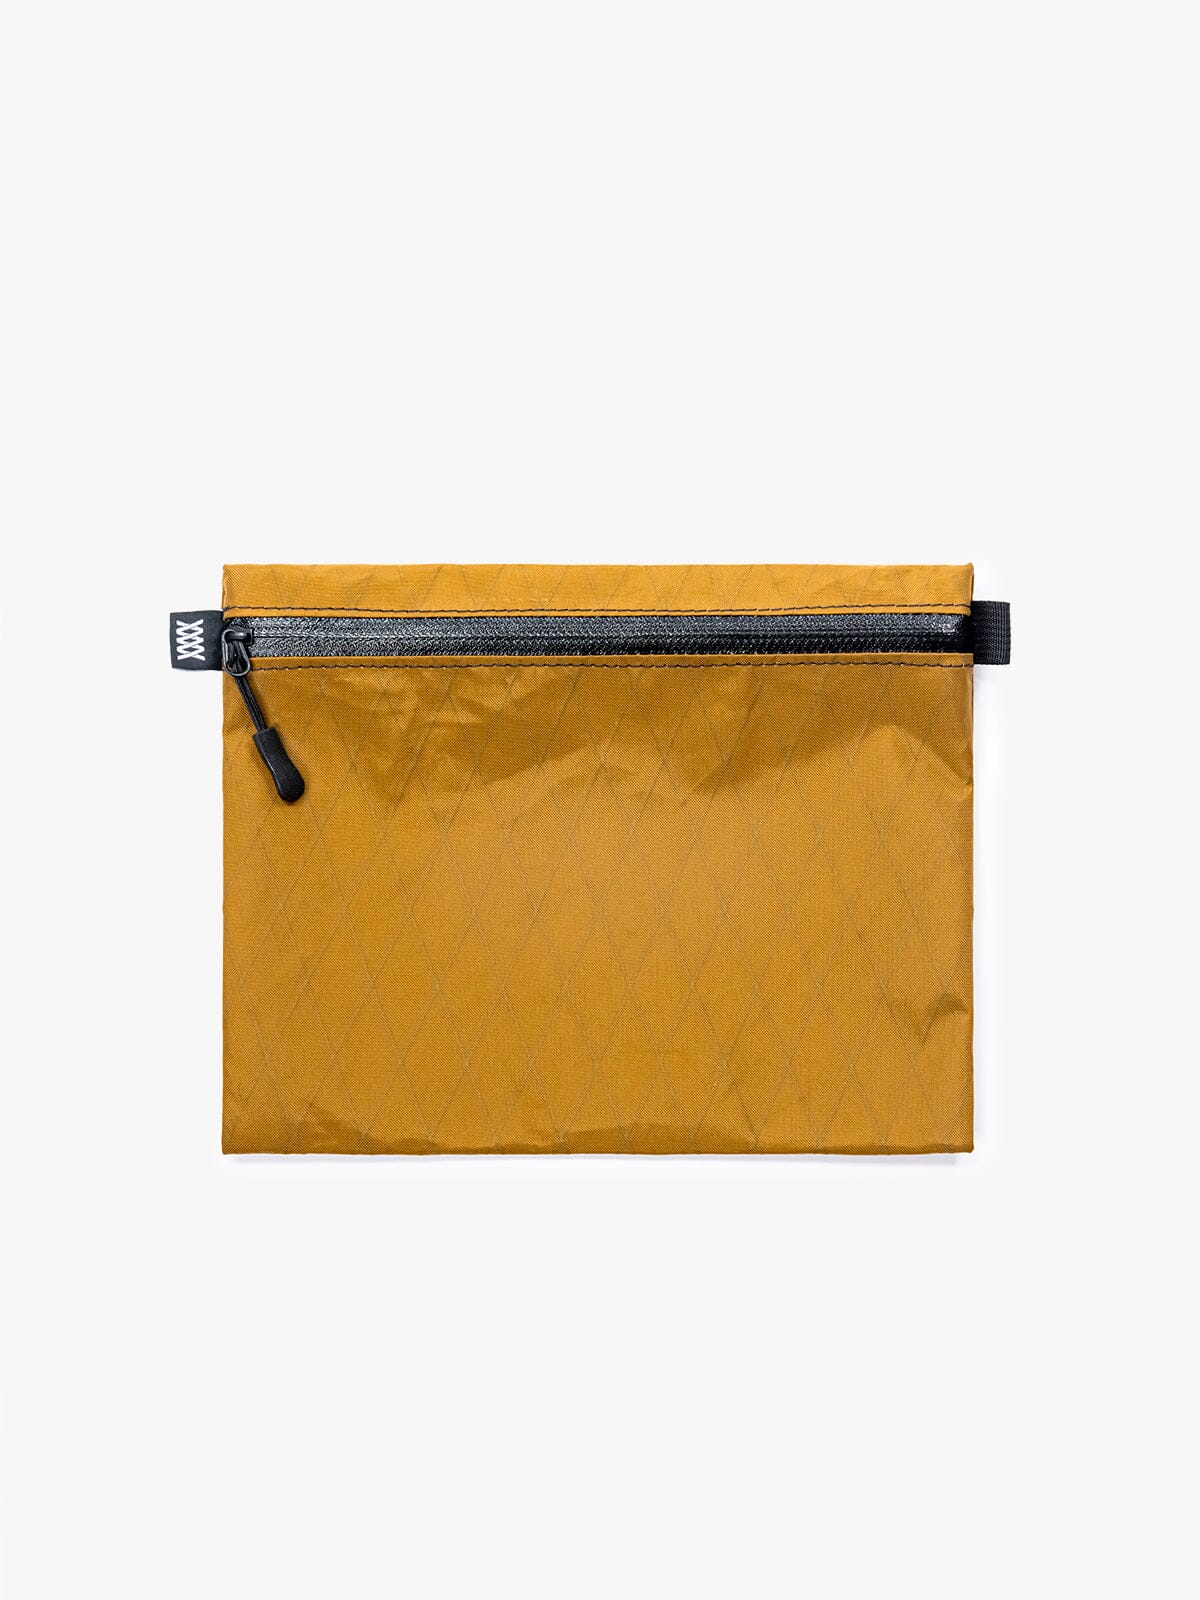 VX Wallet & Utility Pouch by Mission Workshop - Weatherproof Bags & Technical Apparel - San Francisco & Los Angeles - Construit pour durer - Garanti pour toujours